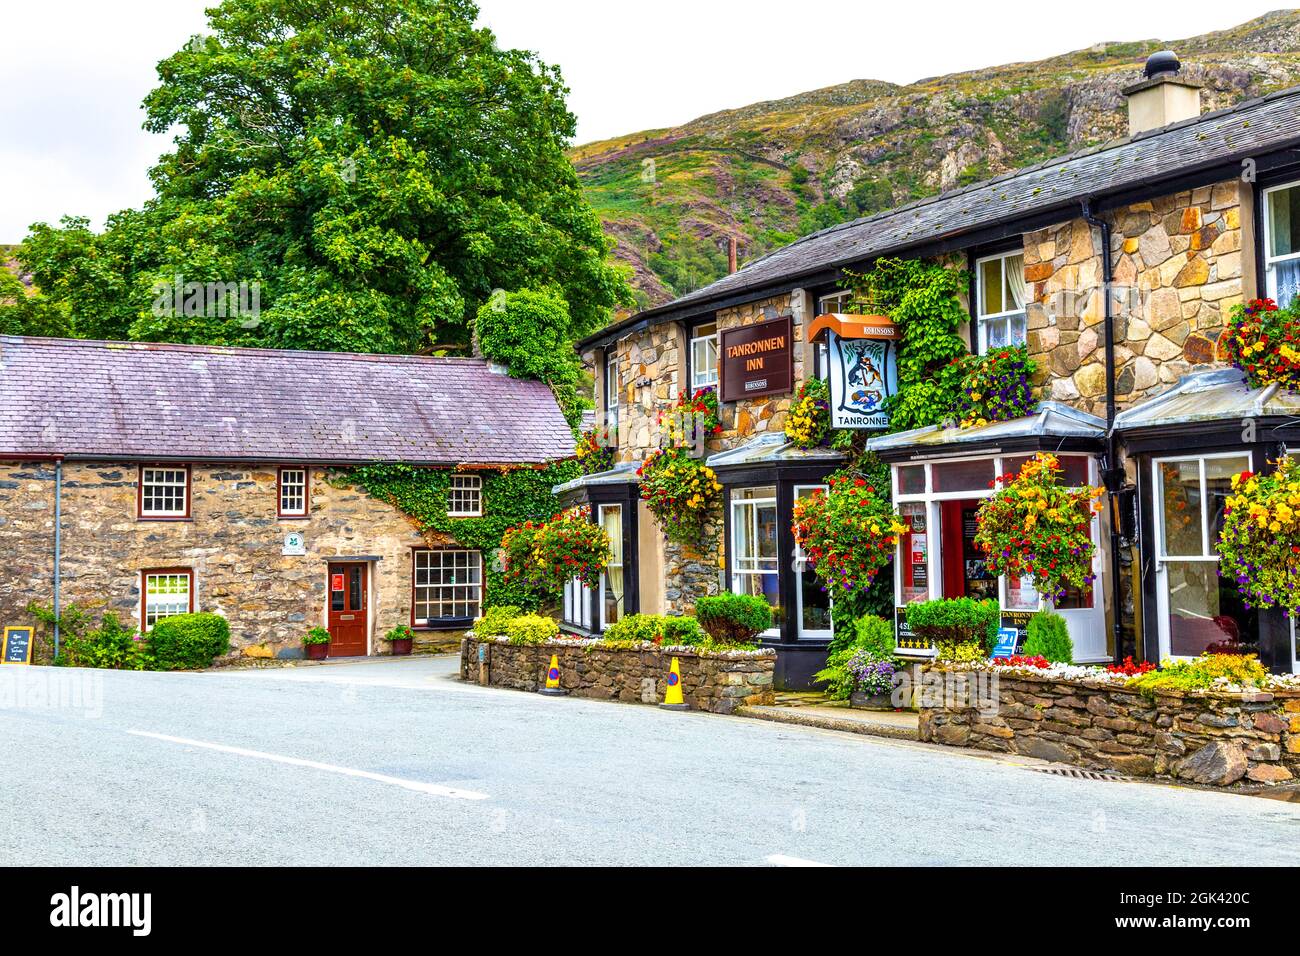 Tanronnen Inn im Dorf Beddgelert, Snowdonia, Wales, Großbritannien Stockfoto